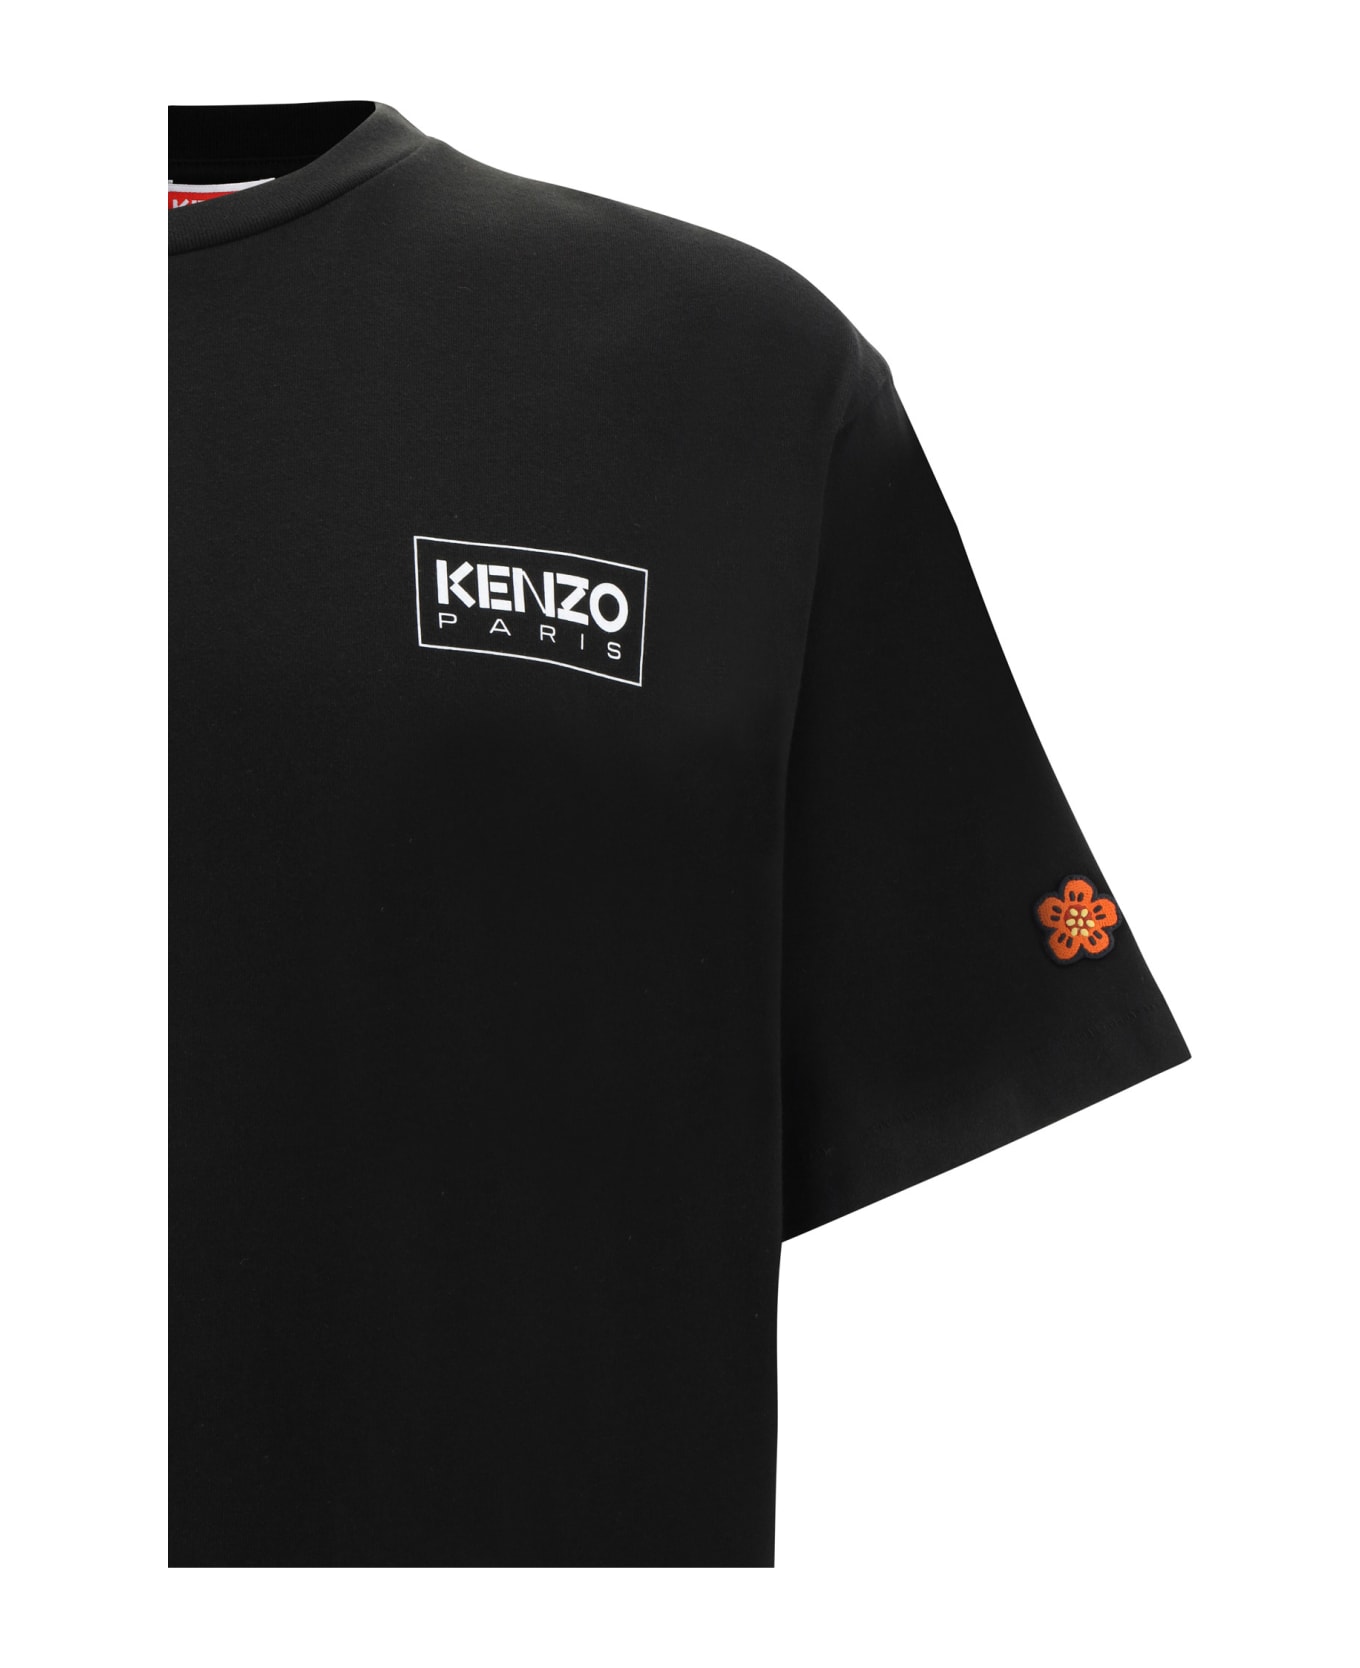 Kenzo T-shirt - Black